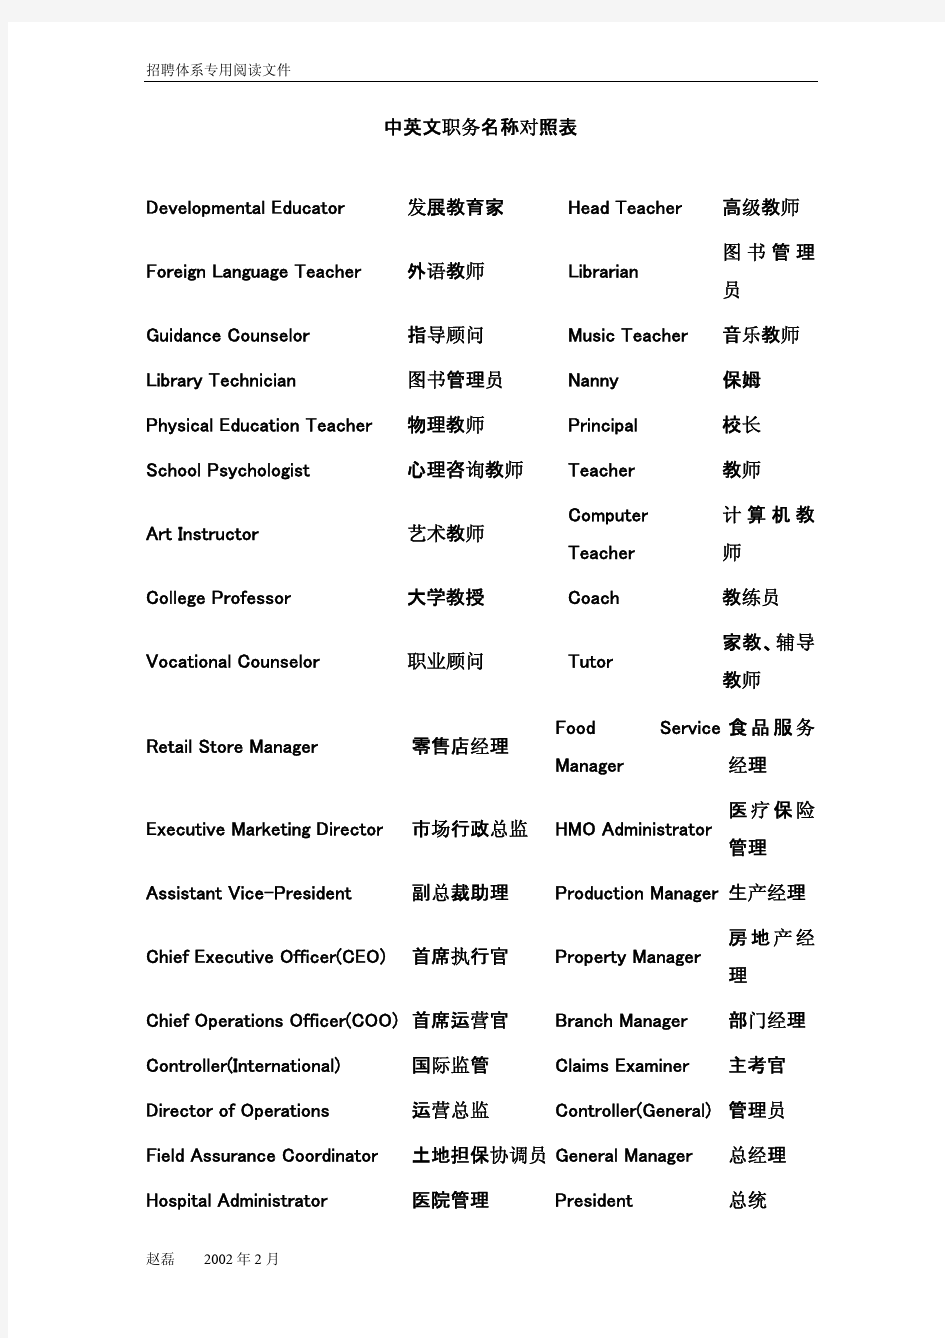 中英文职务名称 简单 对照表